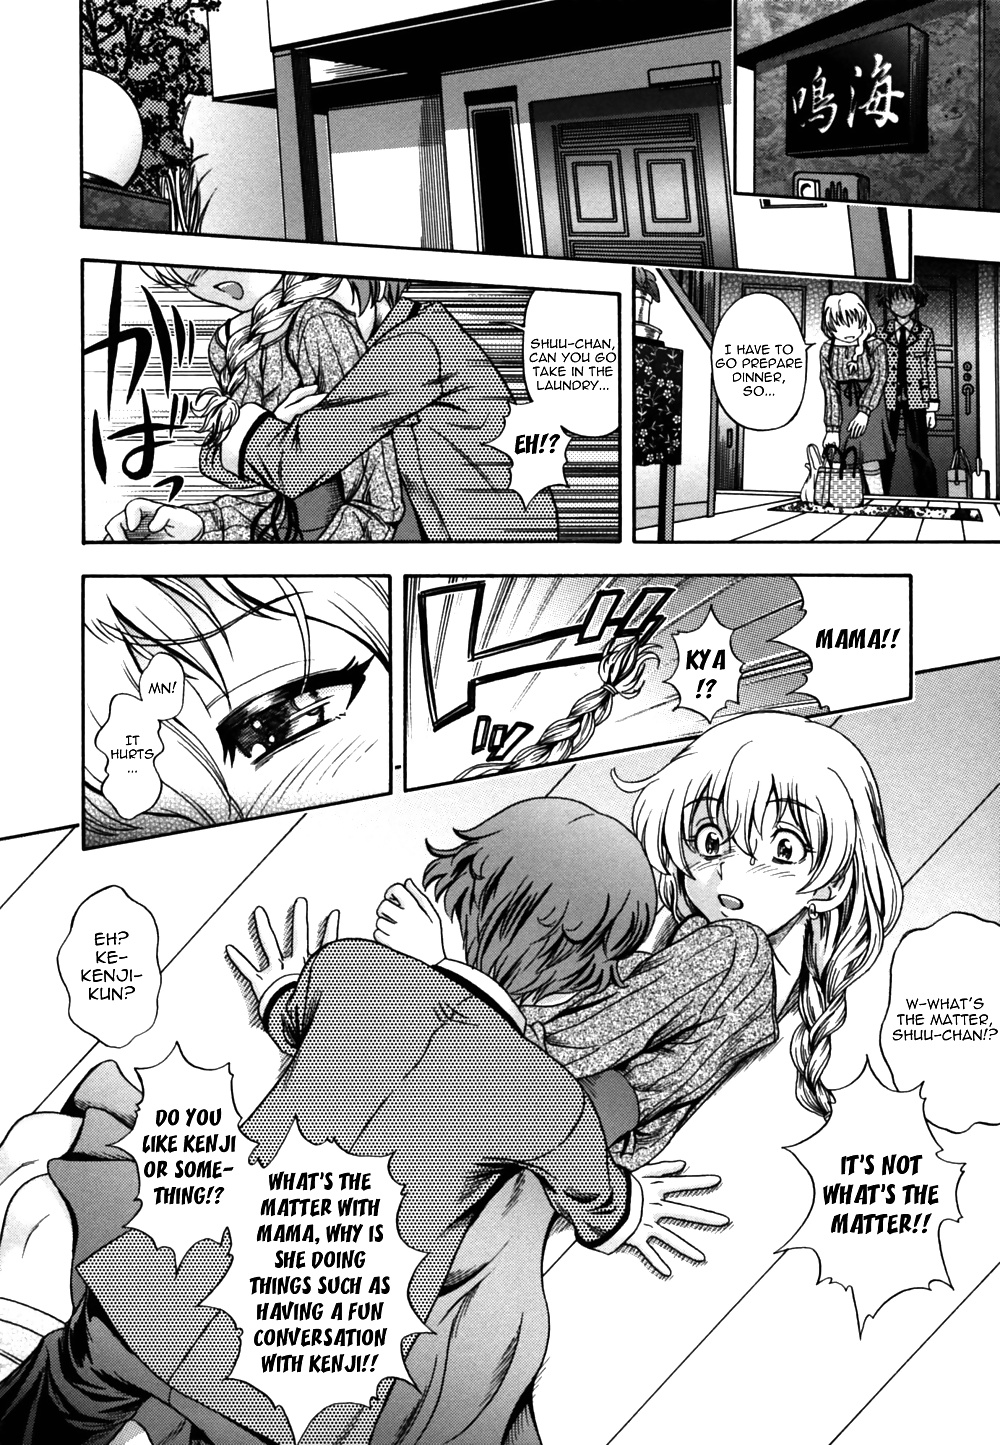 (fumetto hentai) fukudada opere erotiche #4
 #32228962